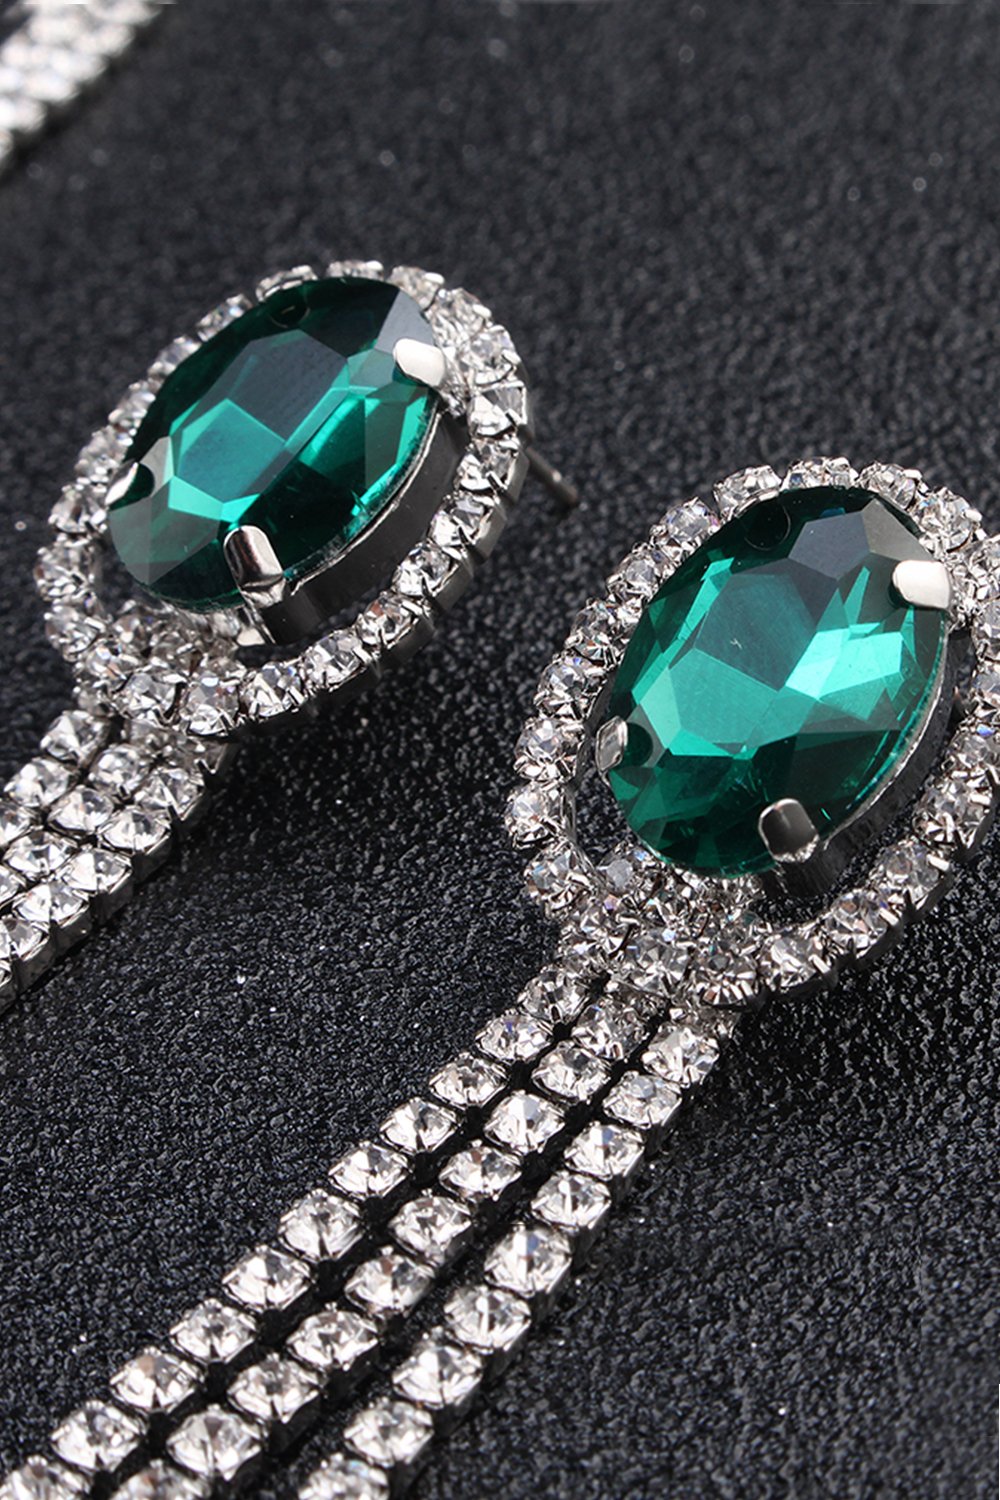 Alloy Rhinestone Necklace Earrings Jewelry CY0070